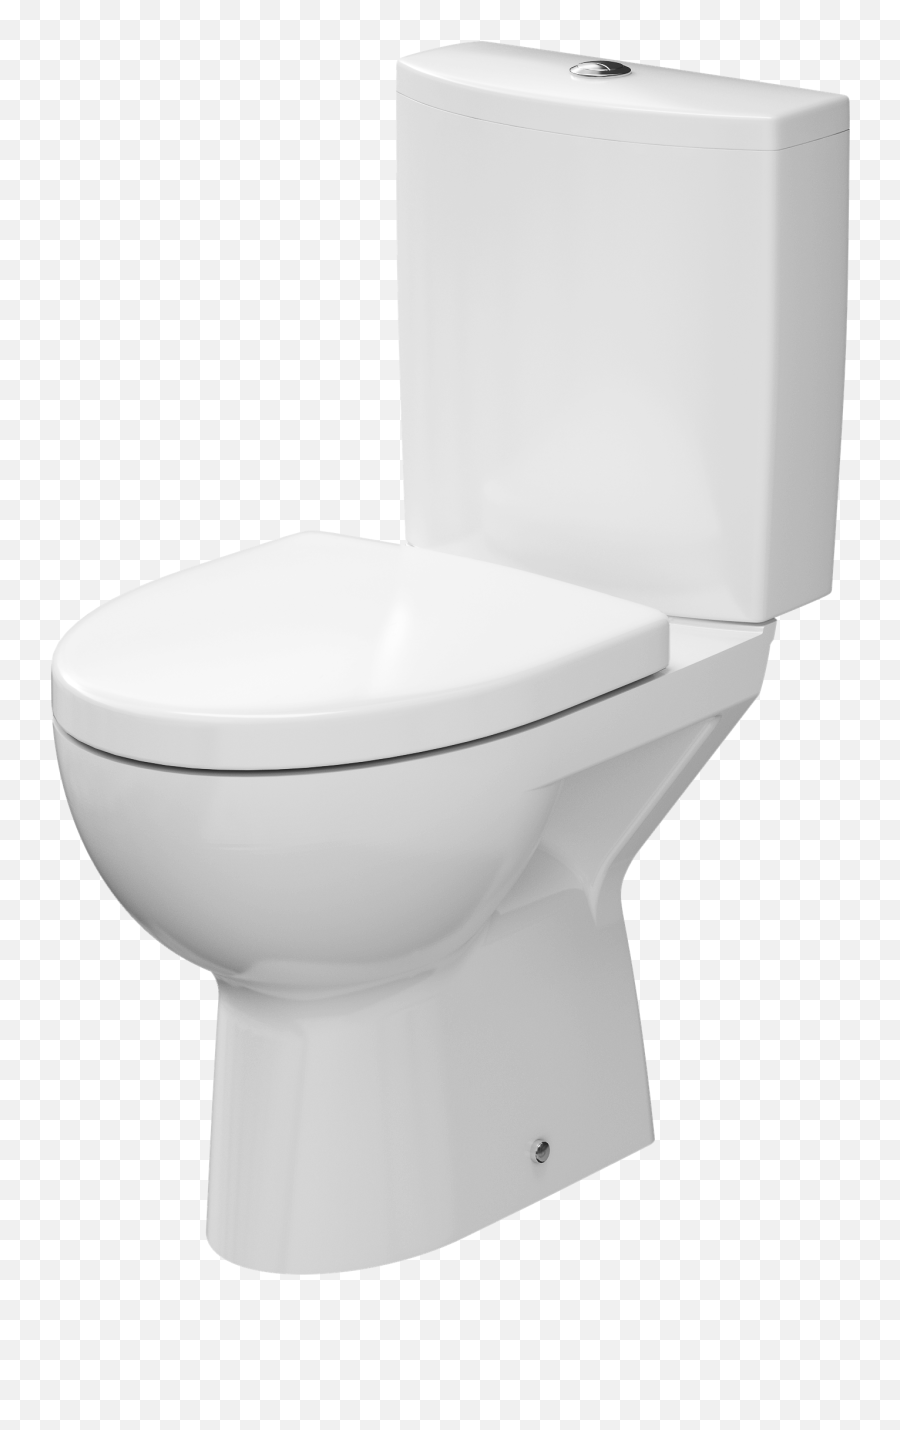 Toilet Png Image - Cs300dre2,Toilet Transparent